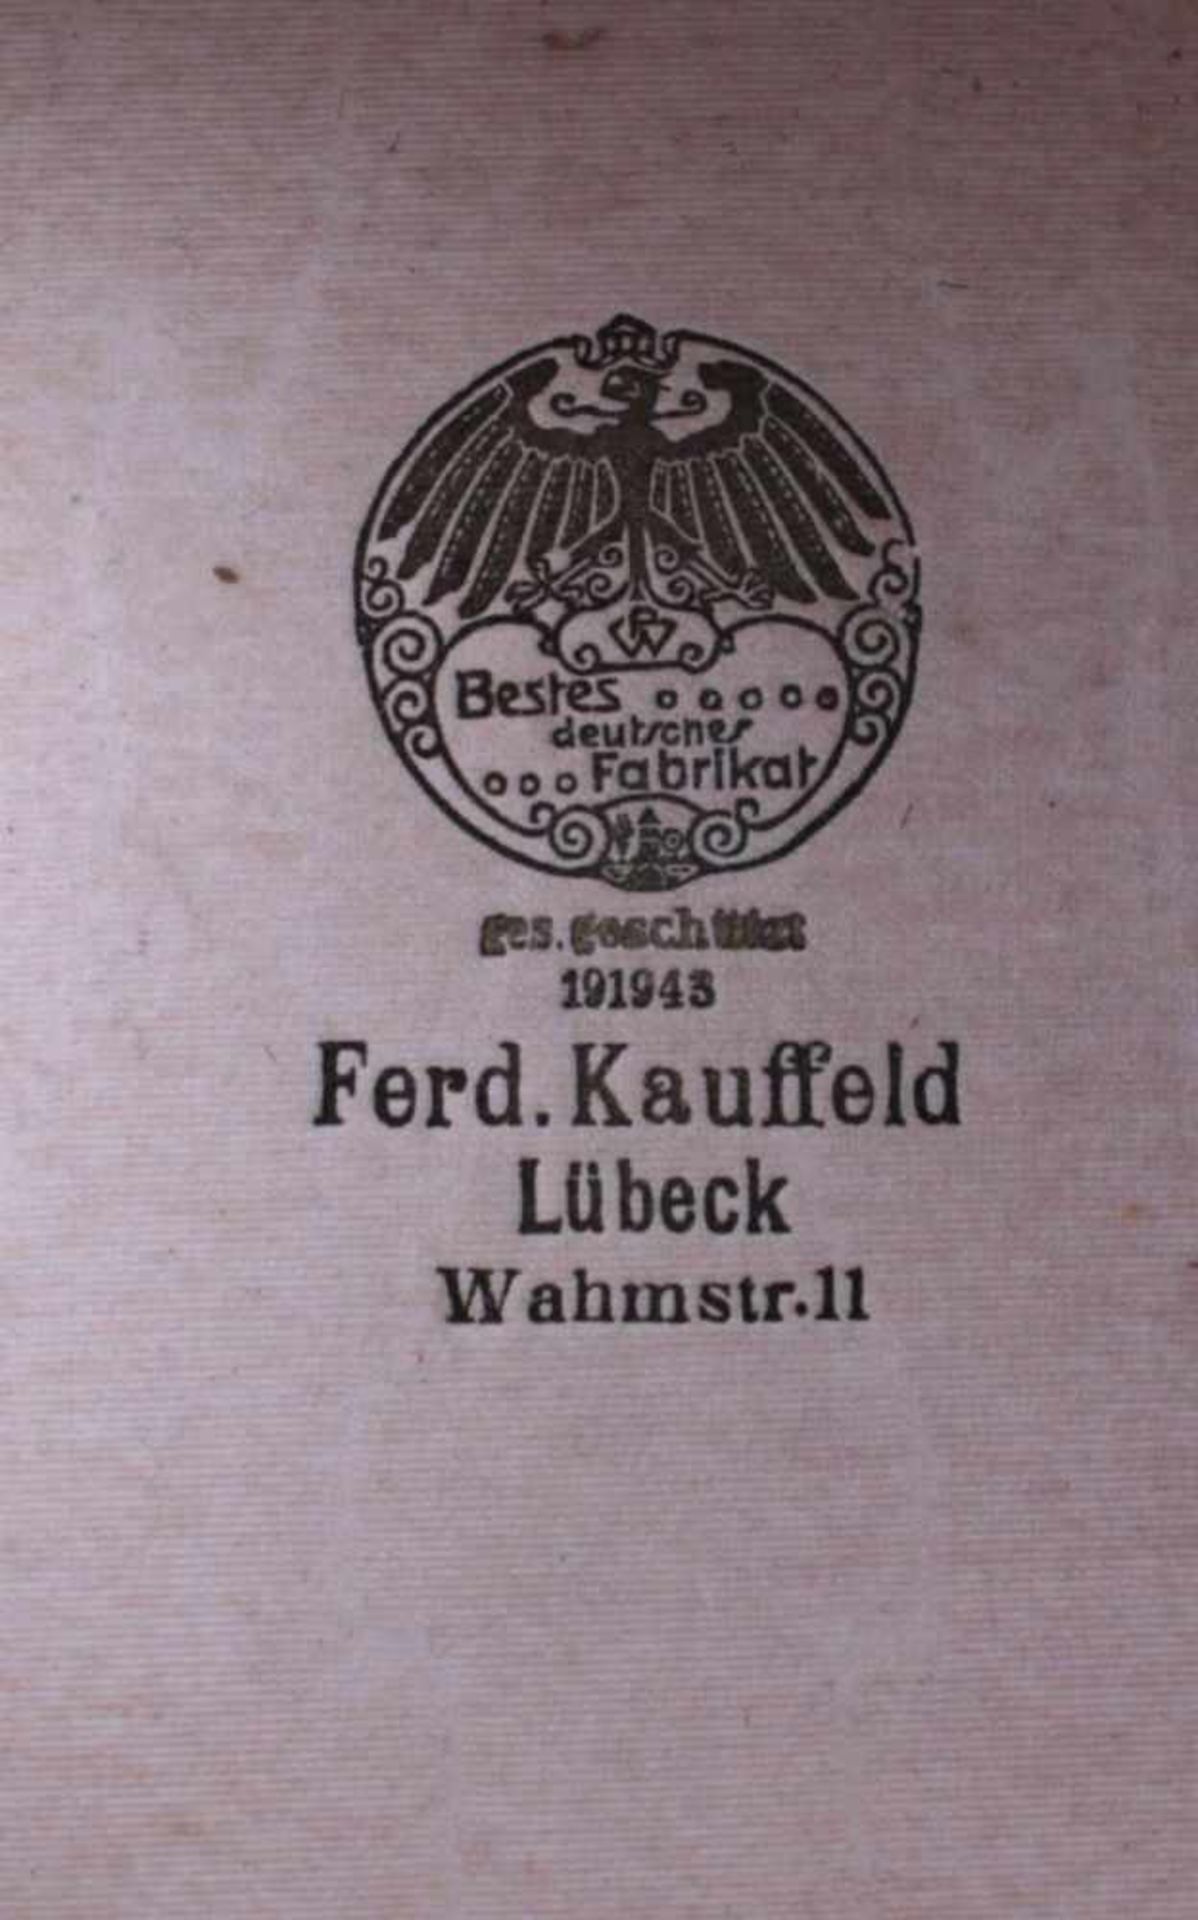 Zylinder um 1900 in HutschachtelZylinder und Hutschachtel mit Verkäuferbezeichnung Ferd.Kauffeld - Bild 2 aus 3